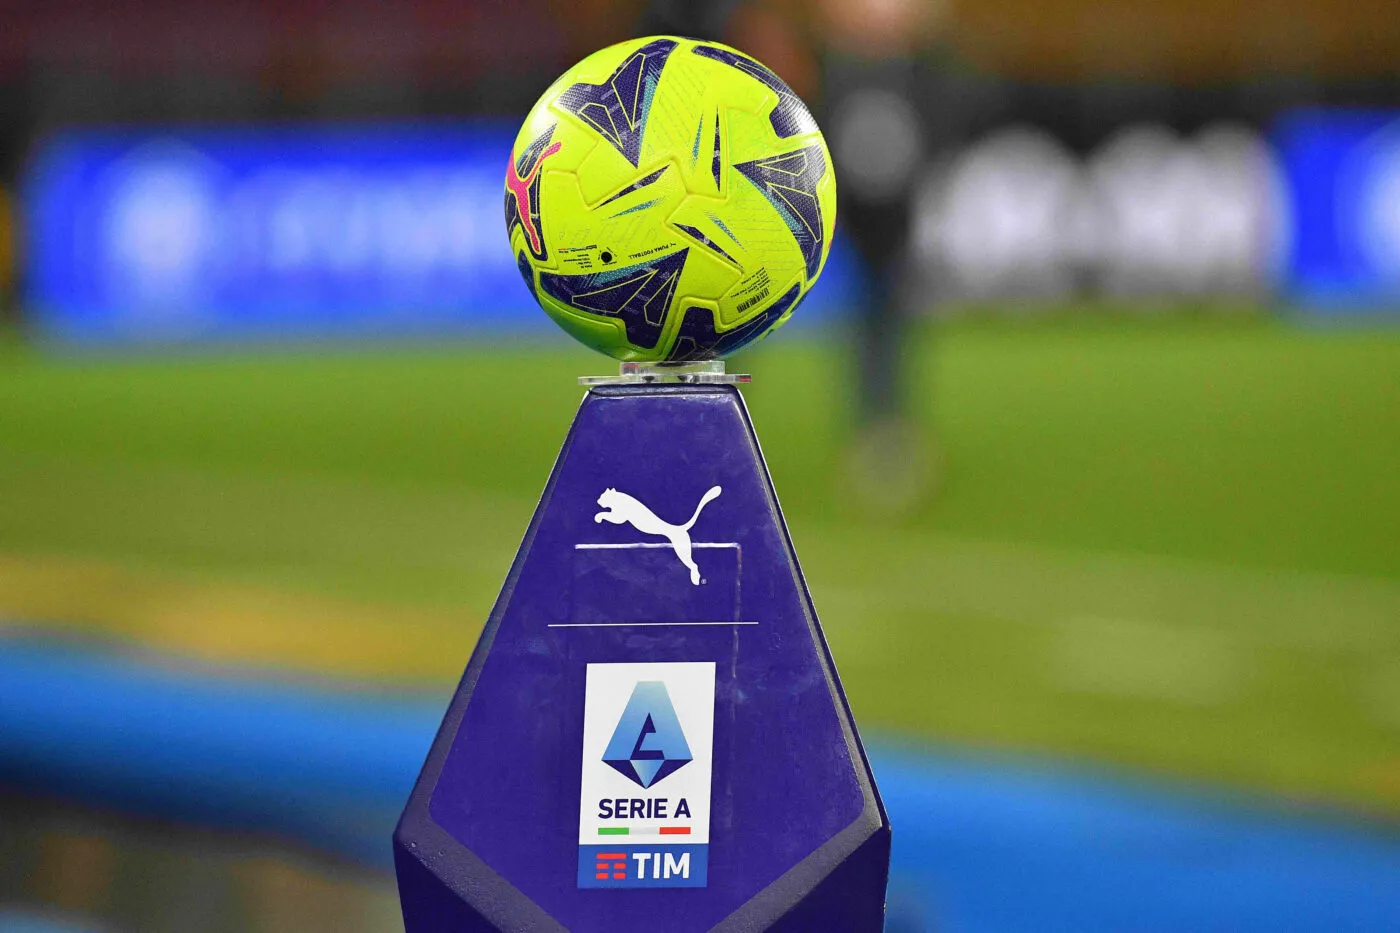 La Serie A lance un concours pour devenir footballeur